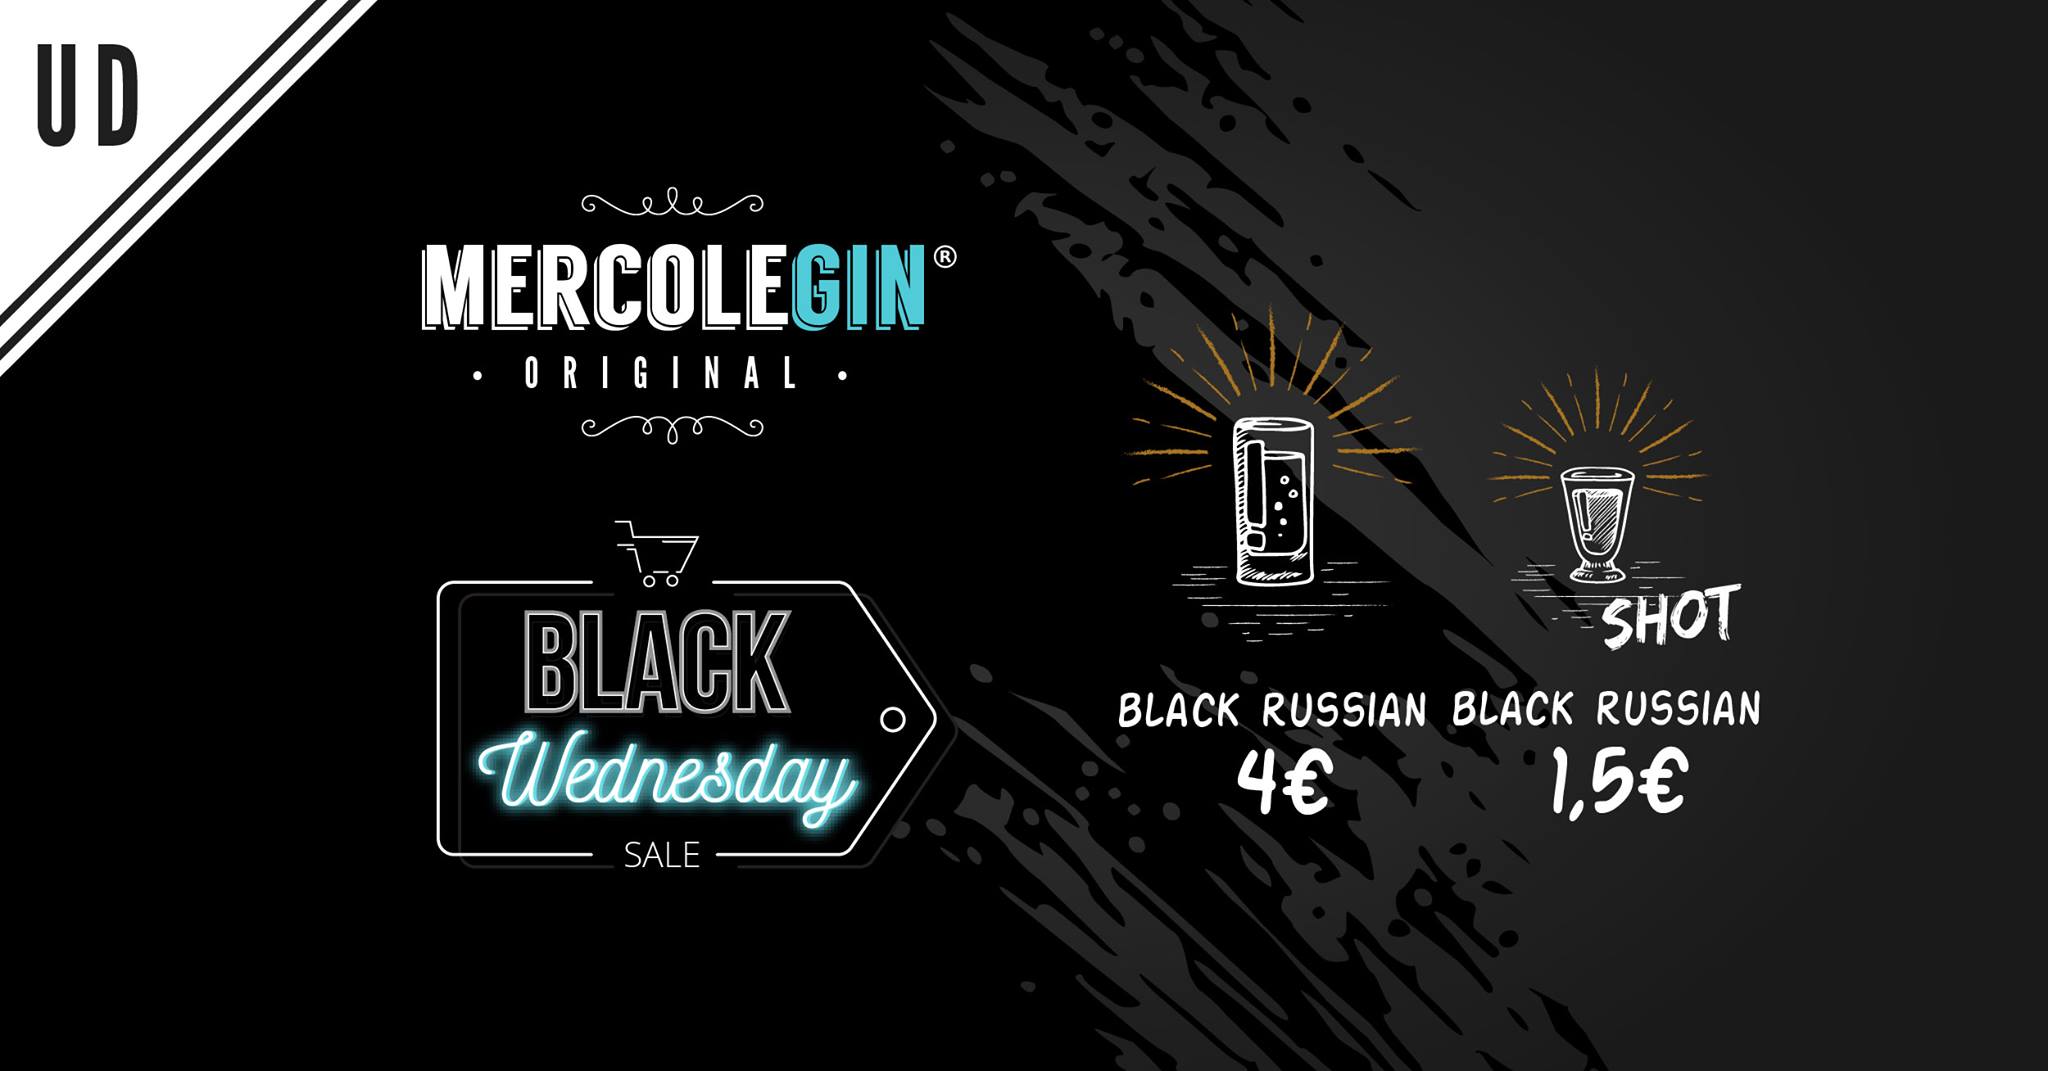 Al momento stai visualizzando Mercoledì 27 novembre Black Wednesday al Mercolegin di Udine